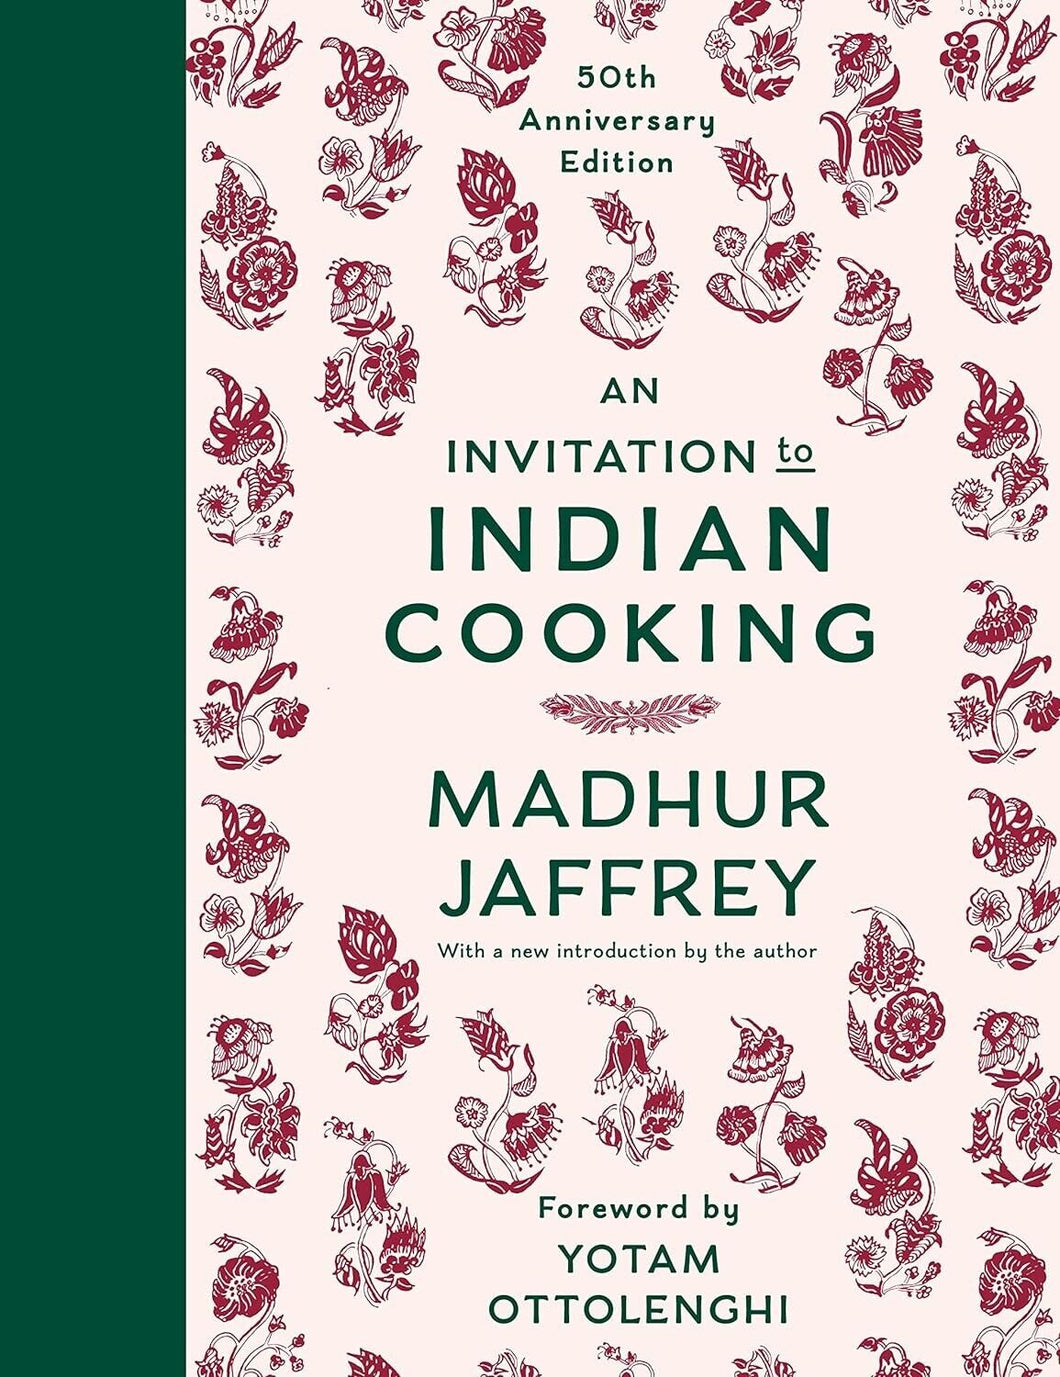 An Invitation to Indian Cooking: 50th Anniversary Edition ร้านหนังสือและสิ่งของ เป็นร้านหนังสือภาษาอังกฤษหายาก และร้านกาแฟ หรือ บุ๊คคาเฟ่ ตั้งอยู่สุขุมวิท กรุงเทพ